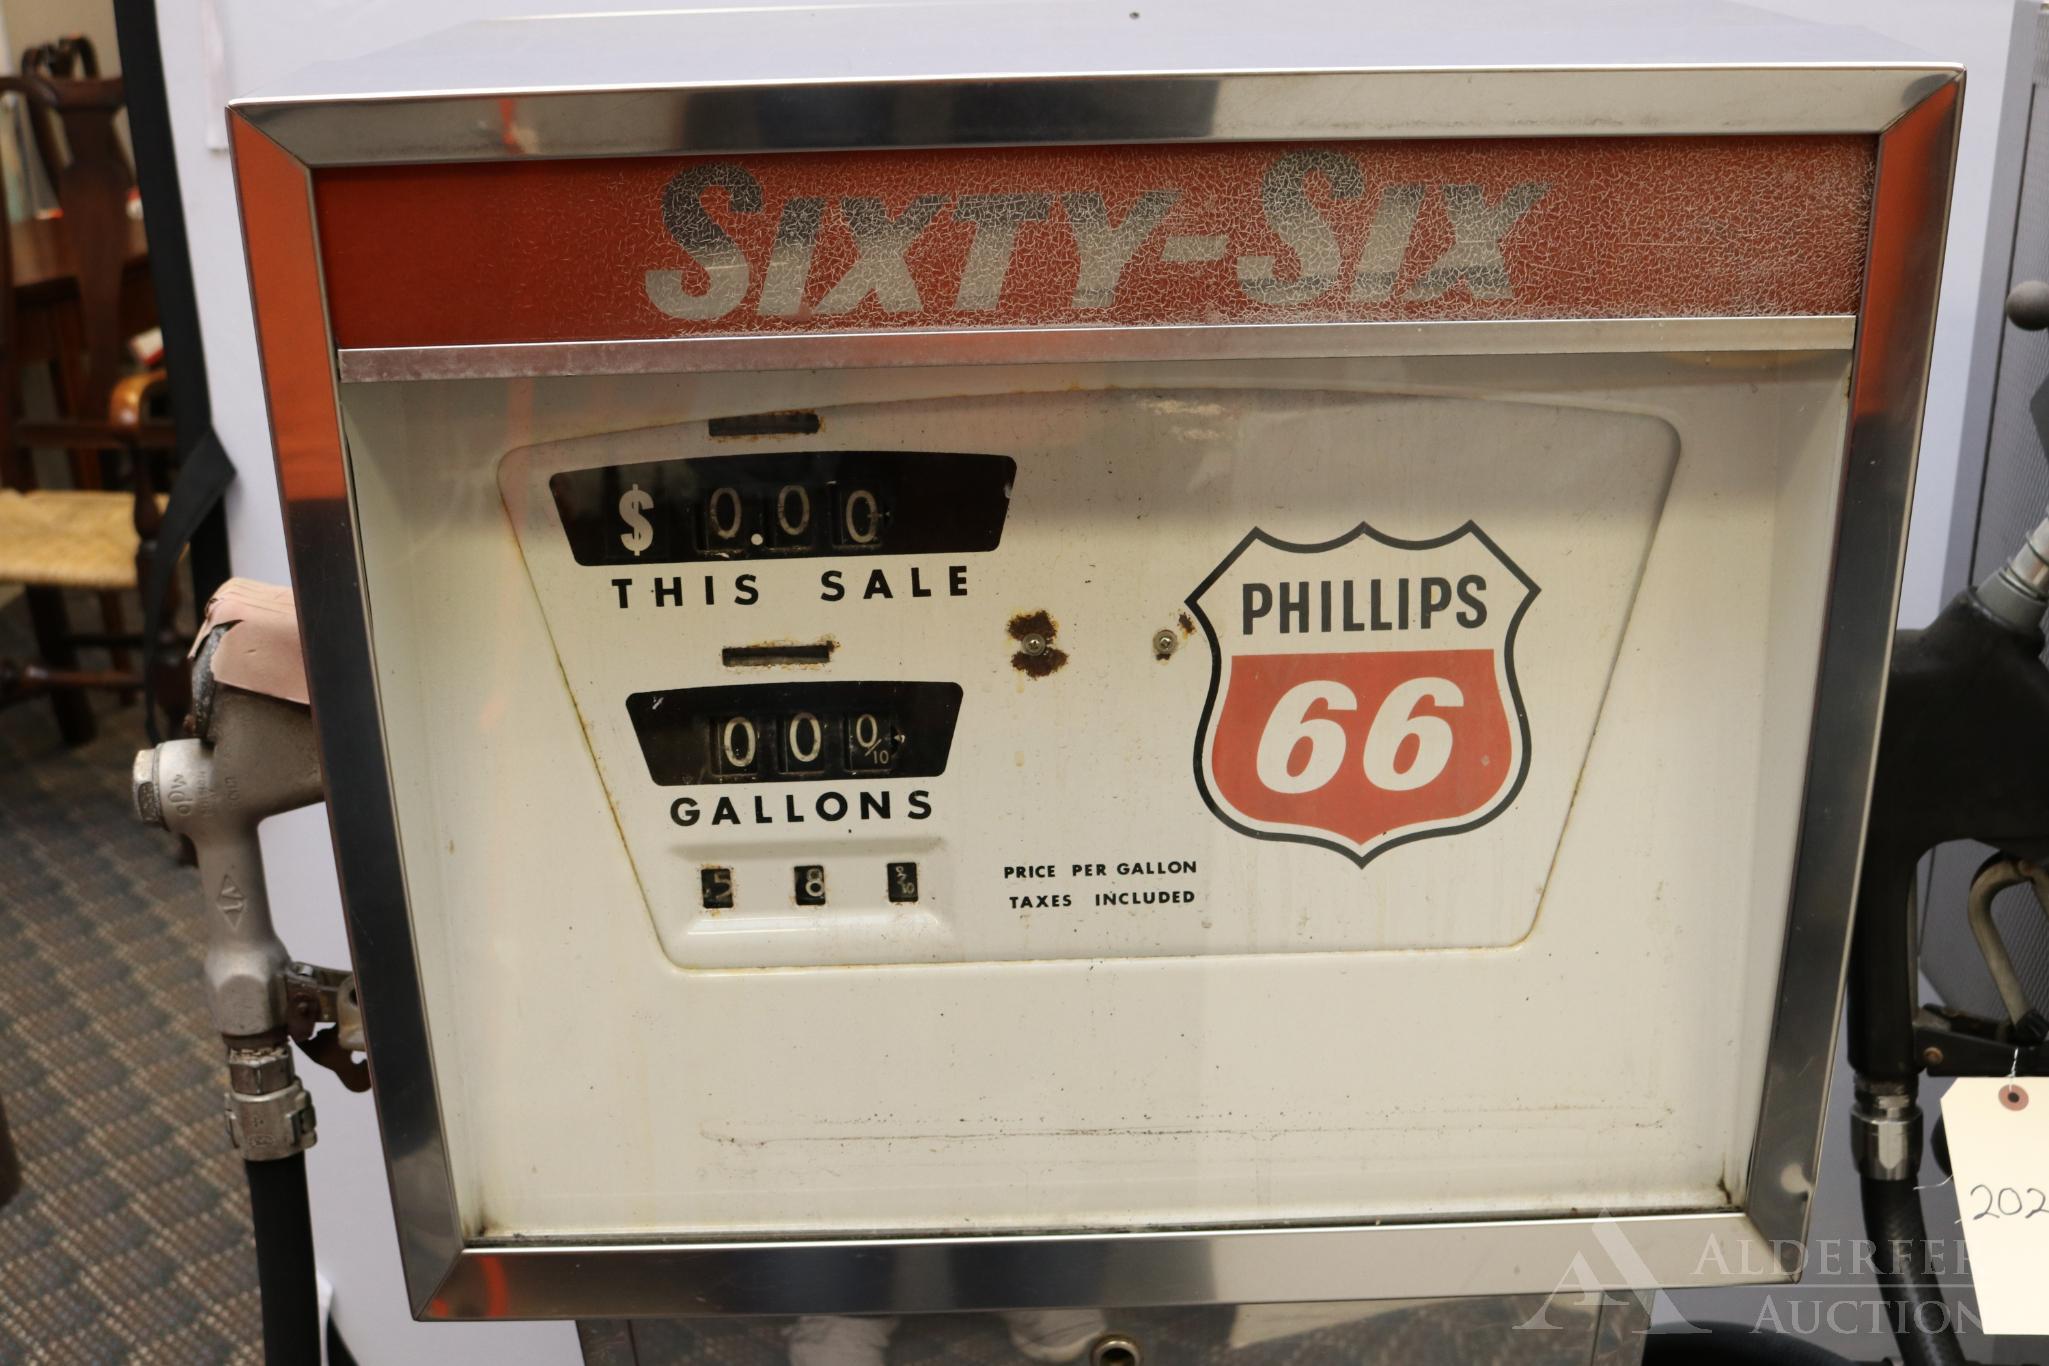 Phillips 66 Gas Pump